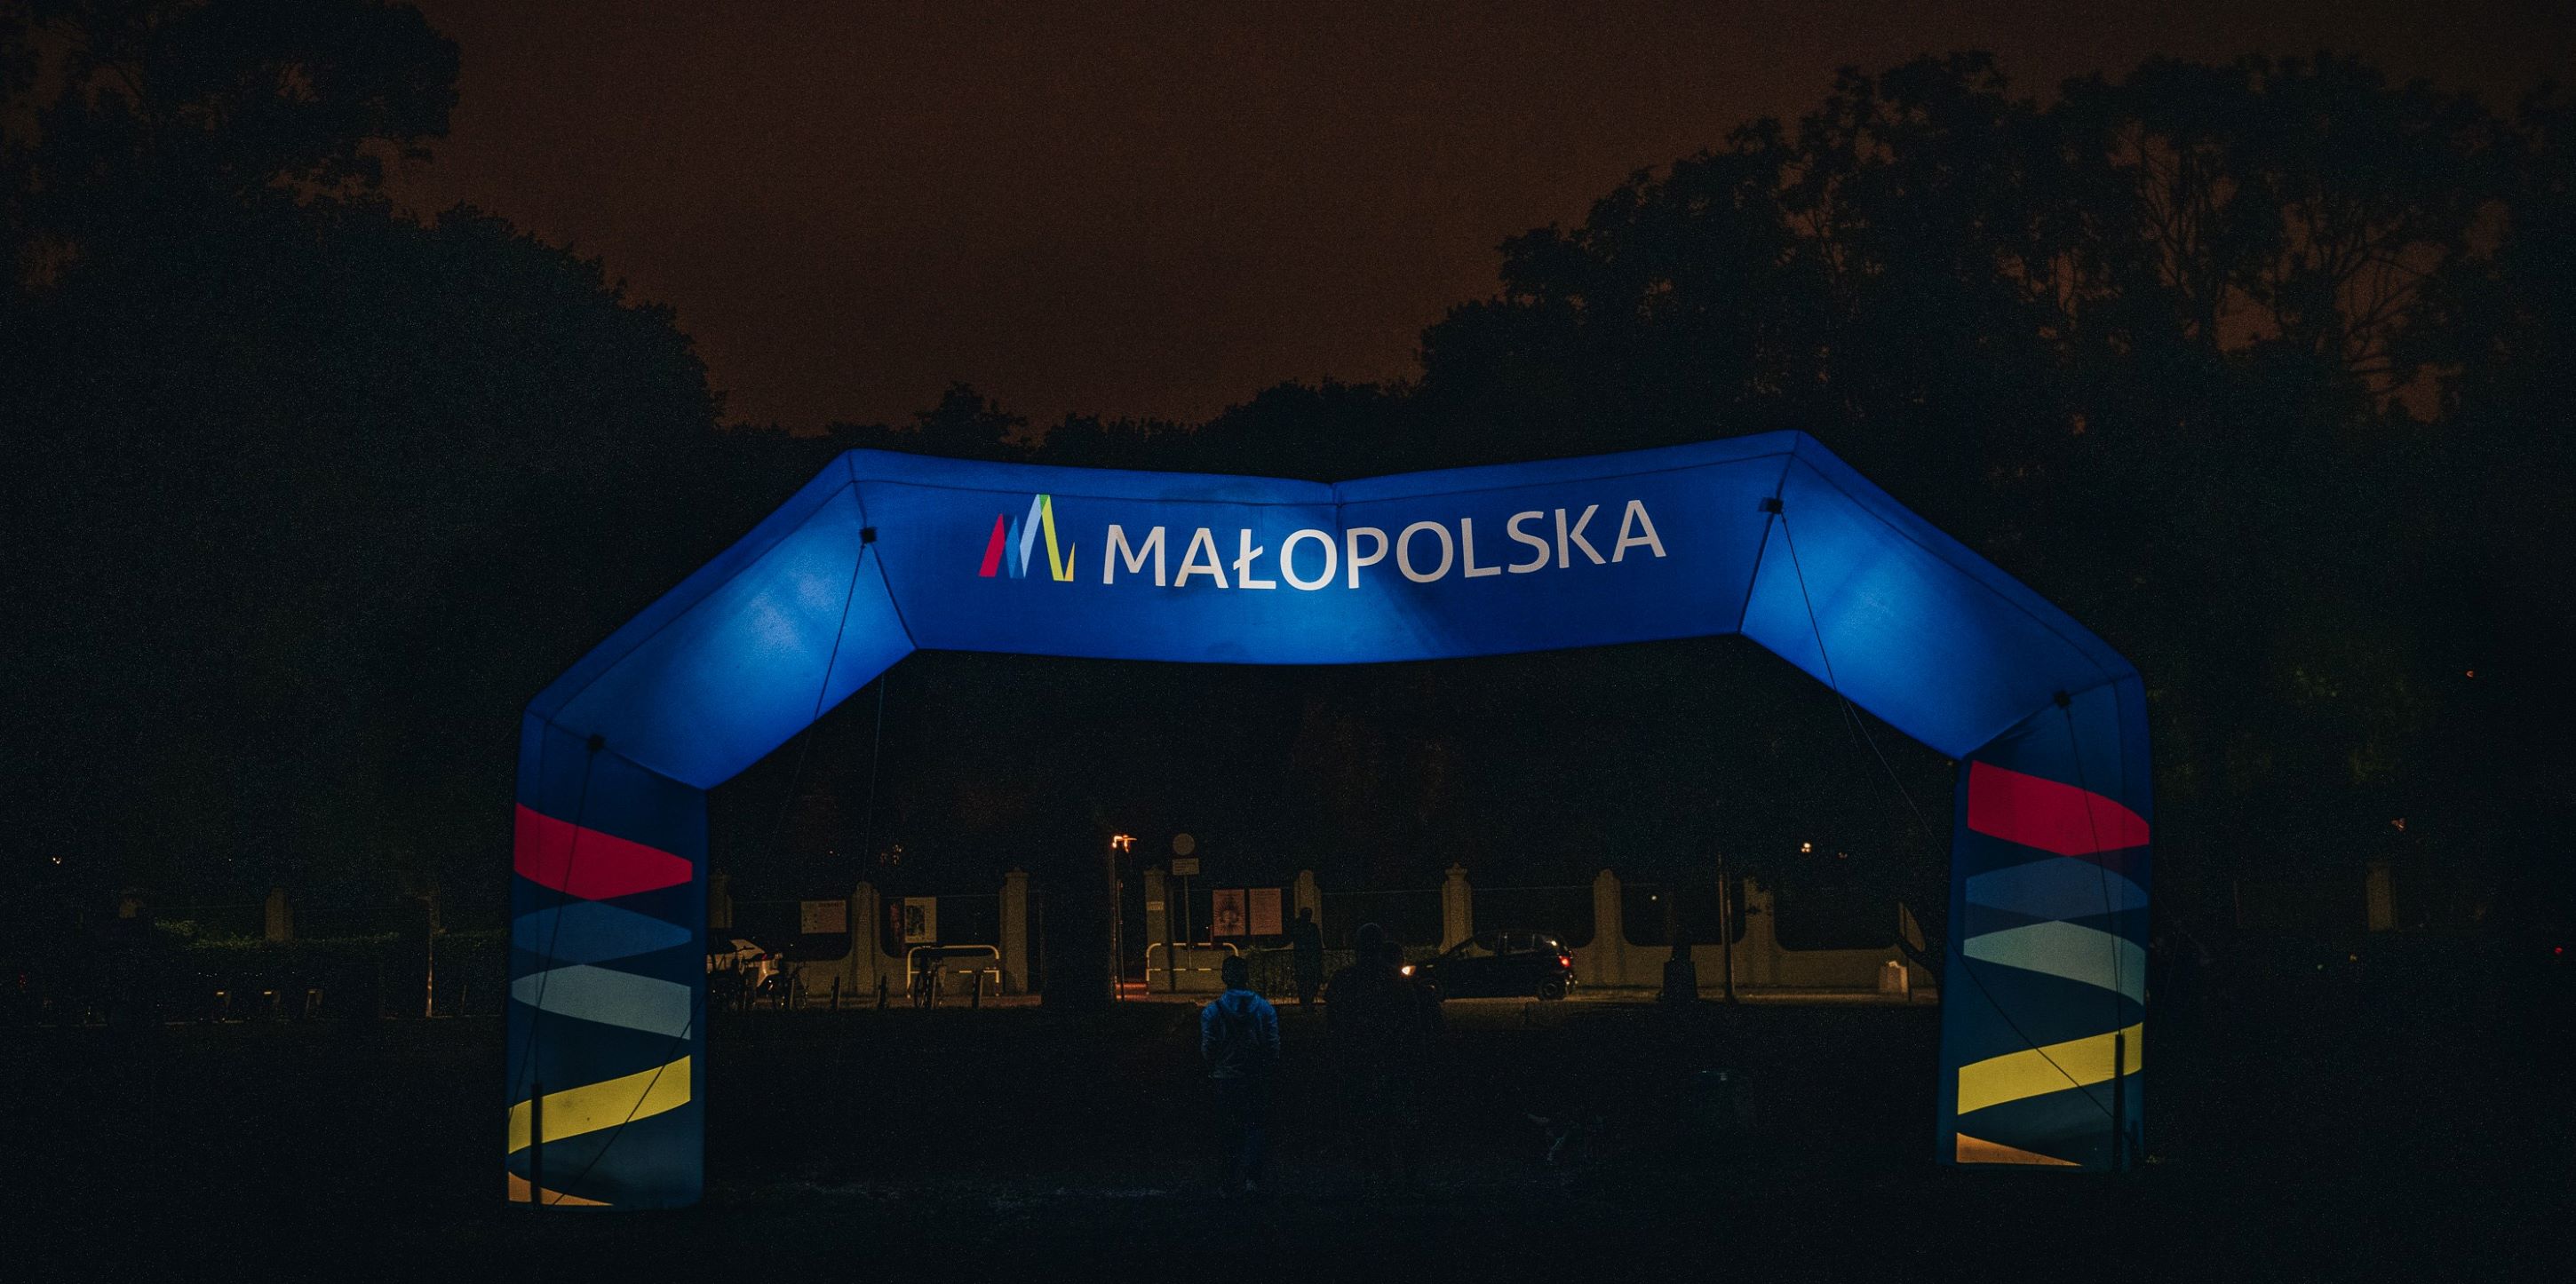 Noc, dwie osoby wychodzą przez bramę z widocznym logo małopolski.